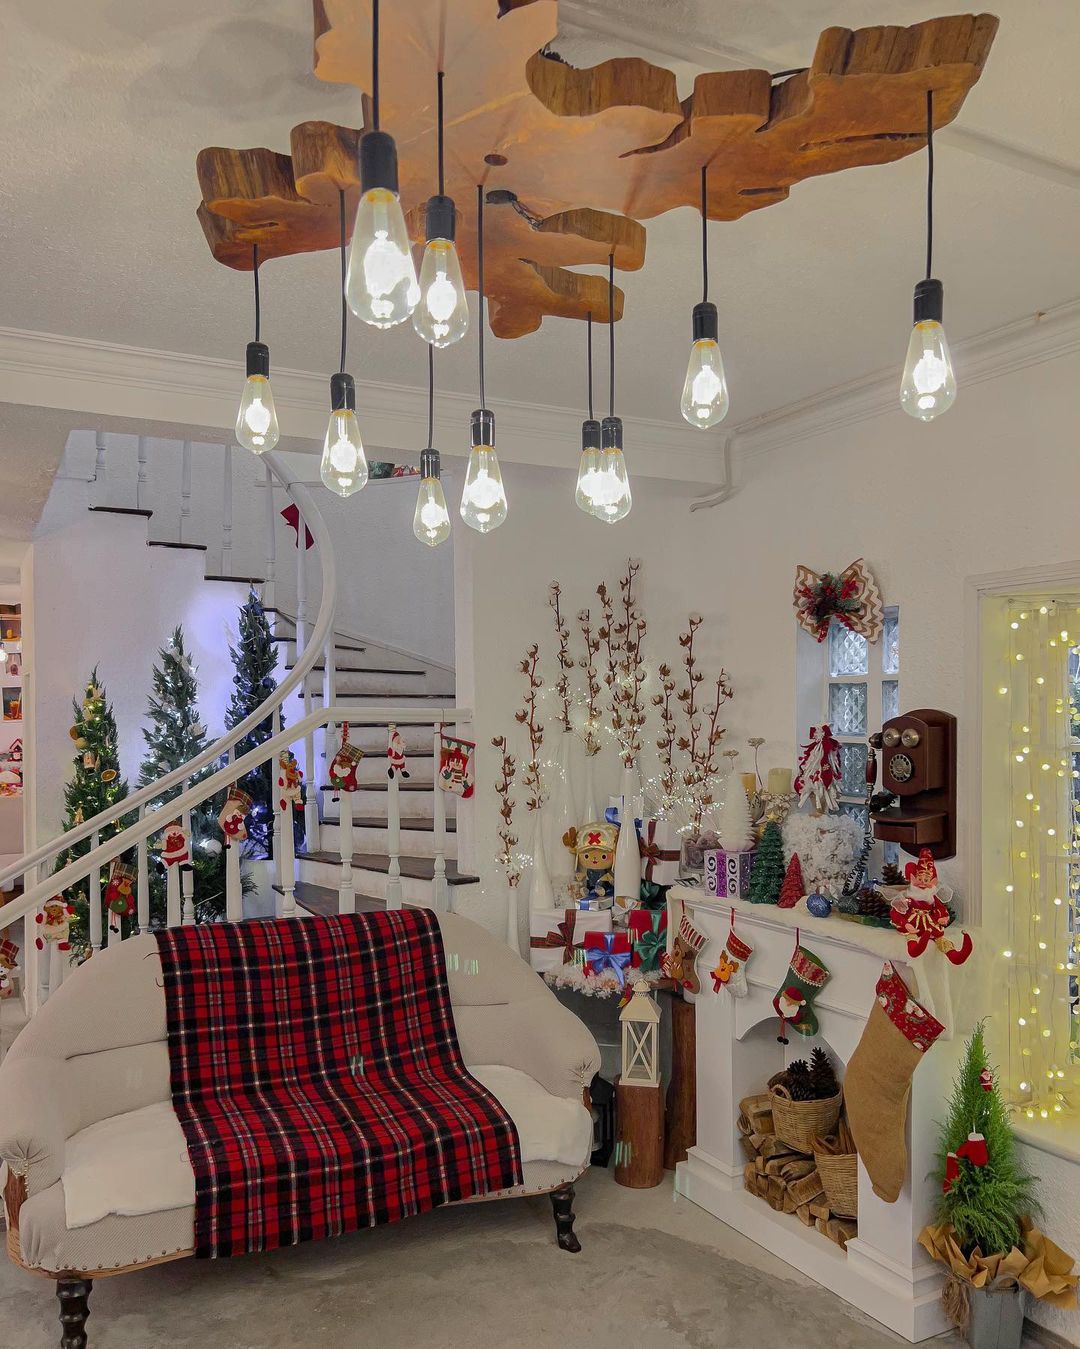 Hưởng ứng không khí Giáng sinh sớm tại những quán cà phê nằm trong ngôi biệt thự phong cách Châu Âu - ảnh 13